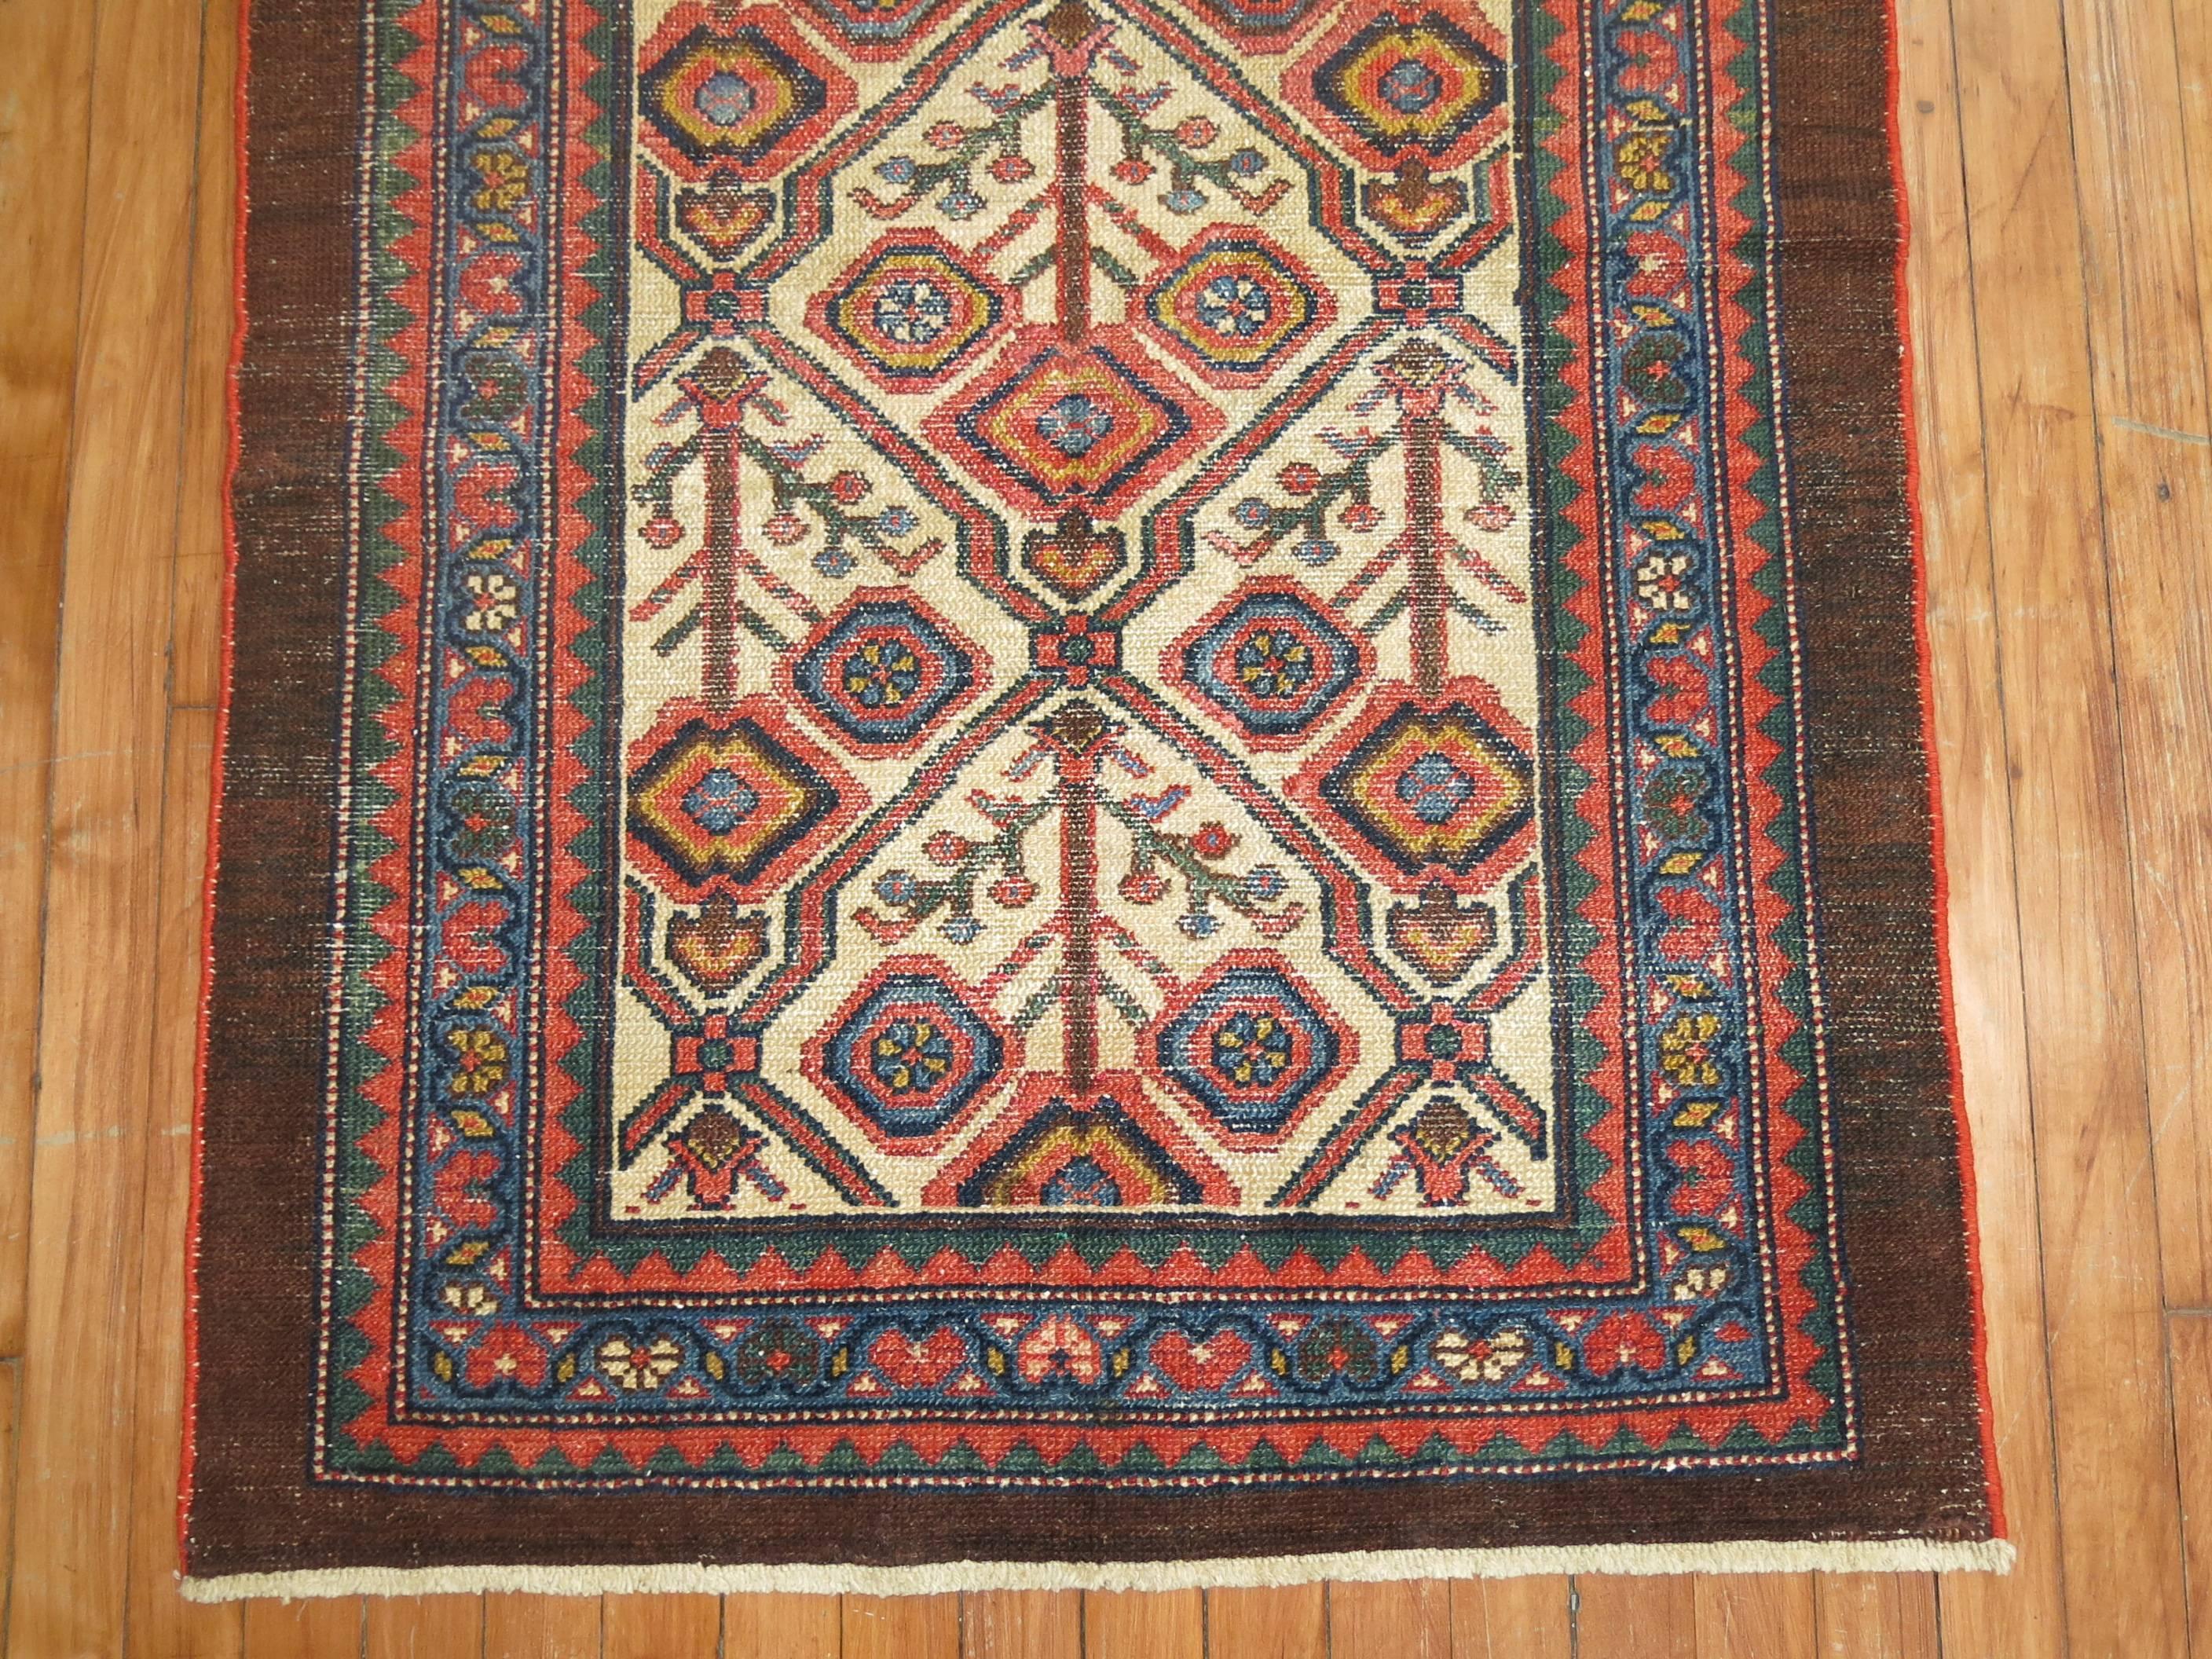 An early 20th century Persian Serab mat.